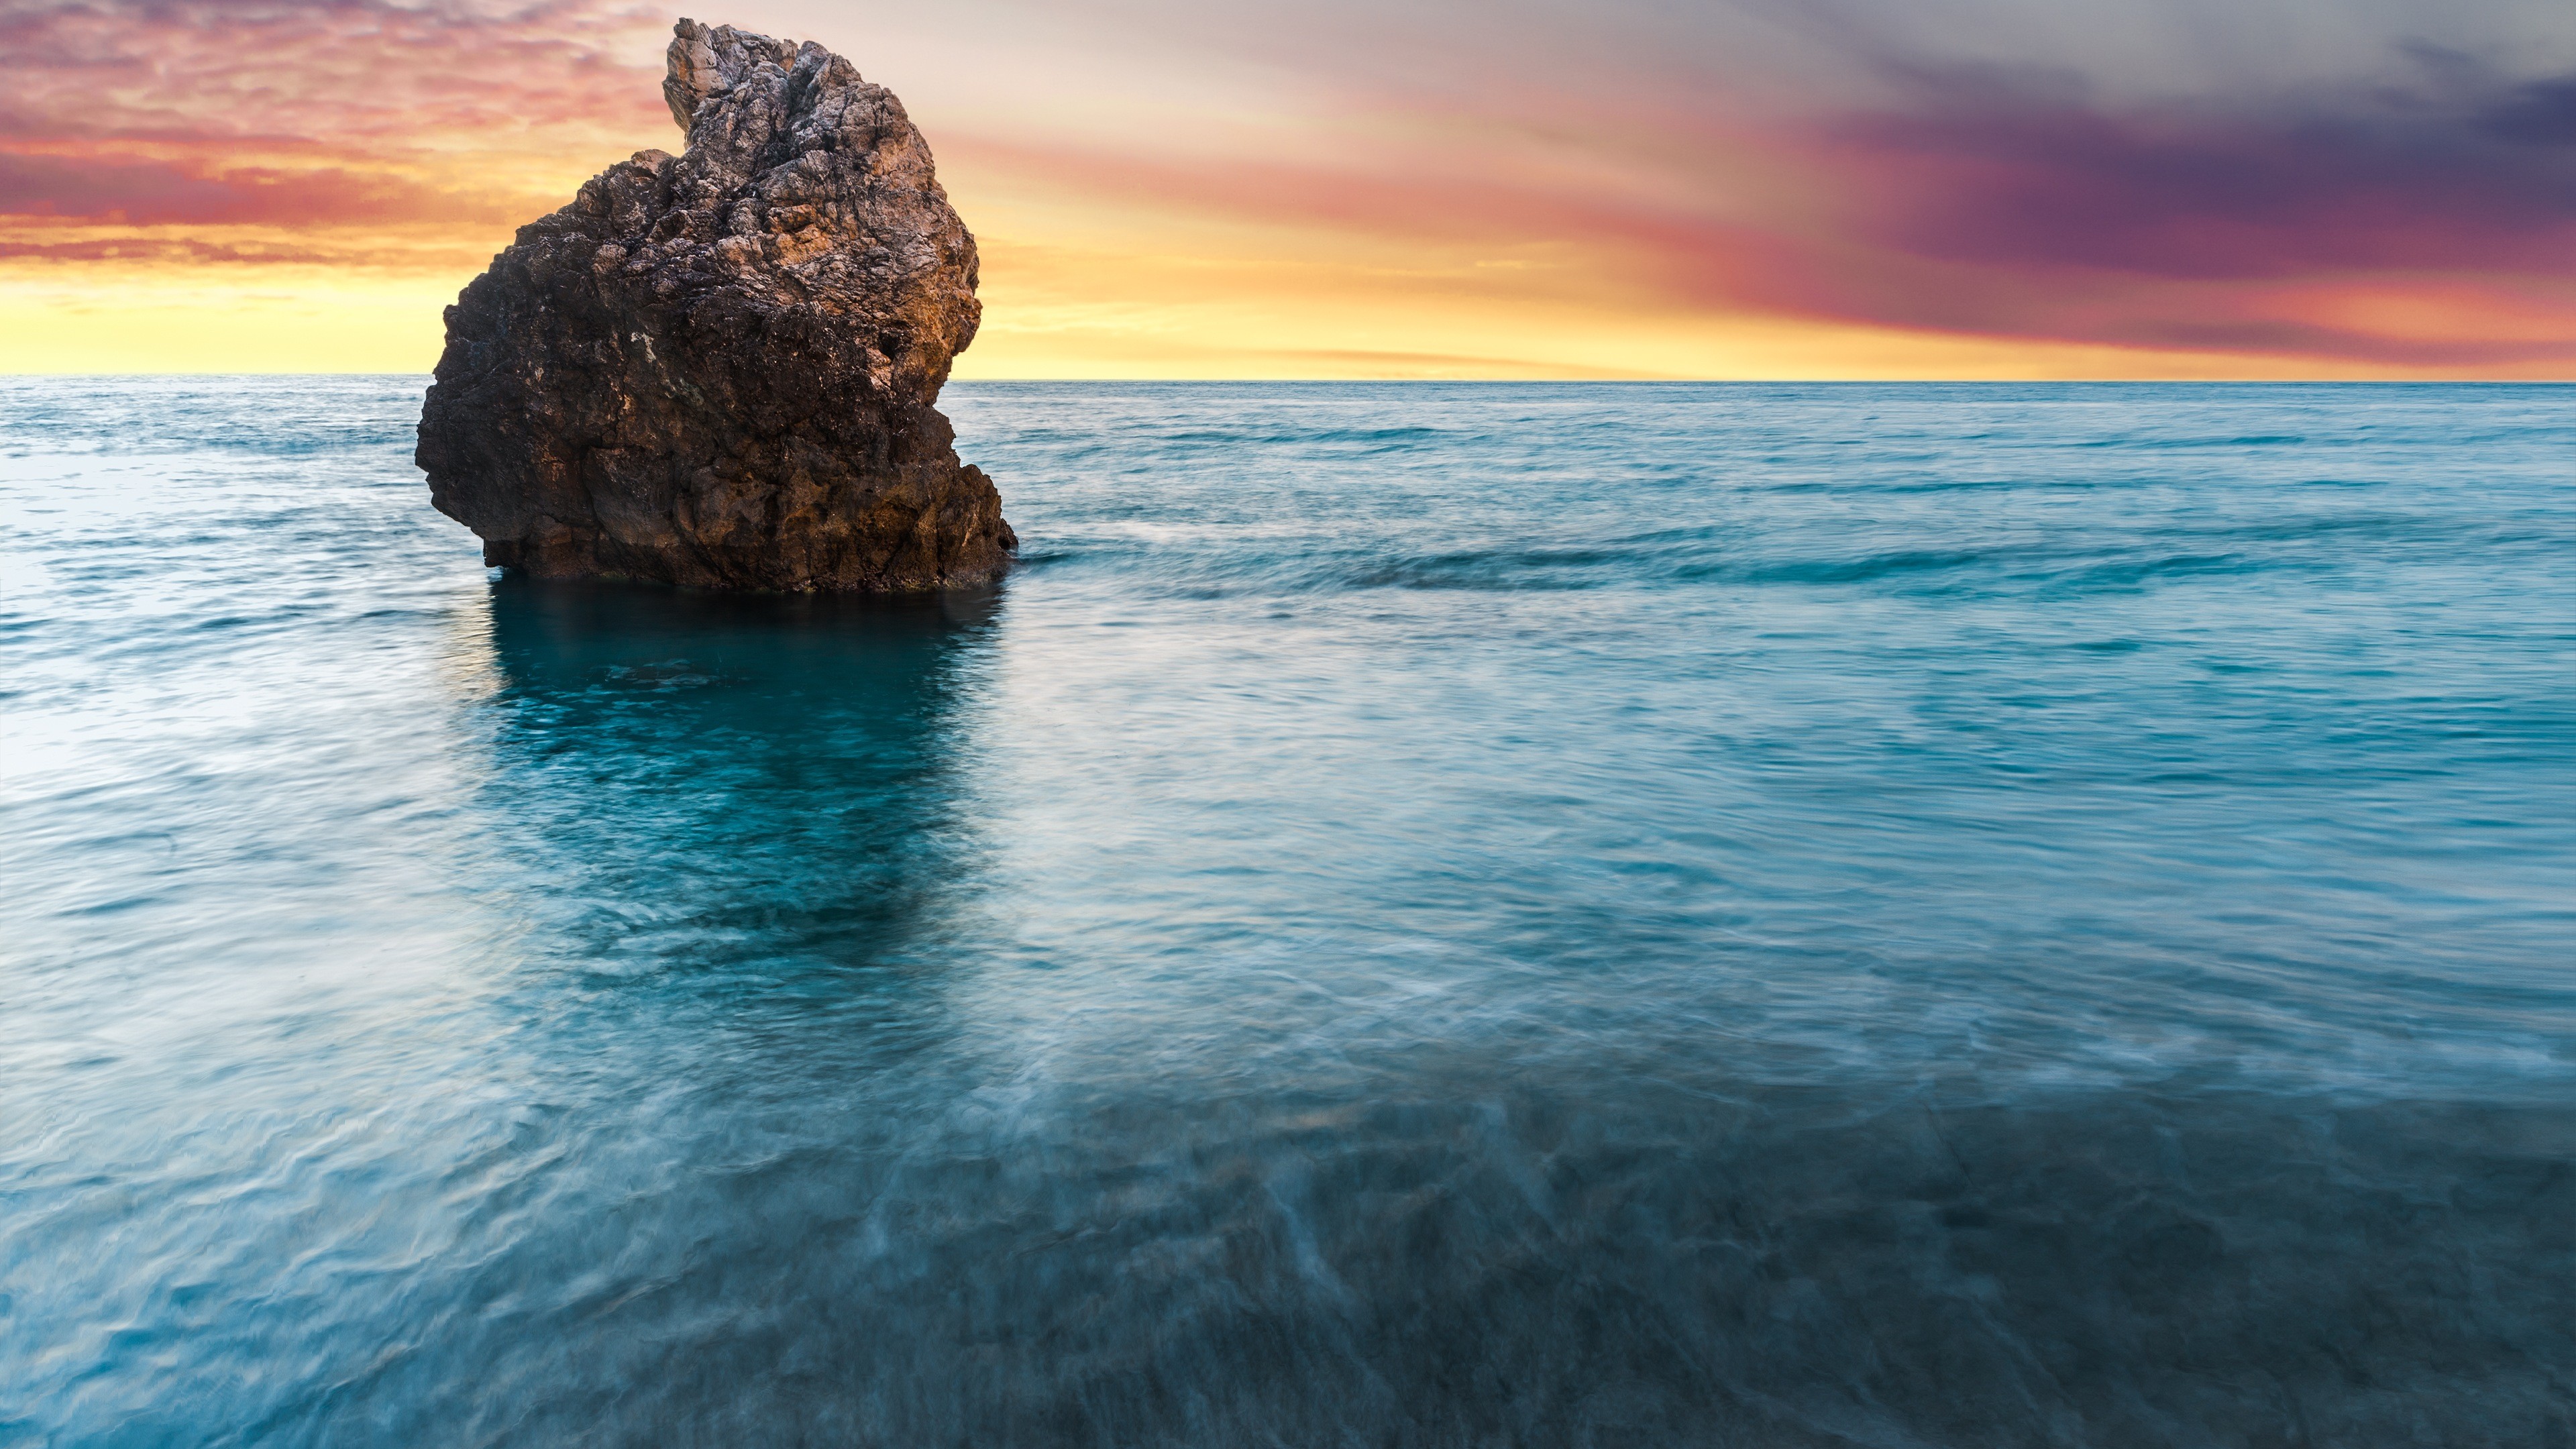 3840x2160 Beach Rock Lefkada Greece 4K Ultra HD Desktop Wallpaper Uploaded by  DesktopWalls